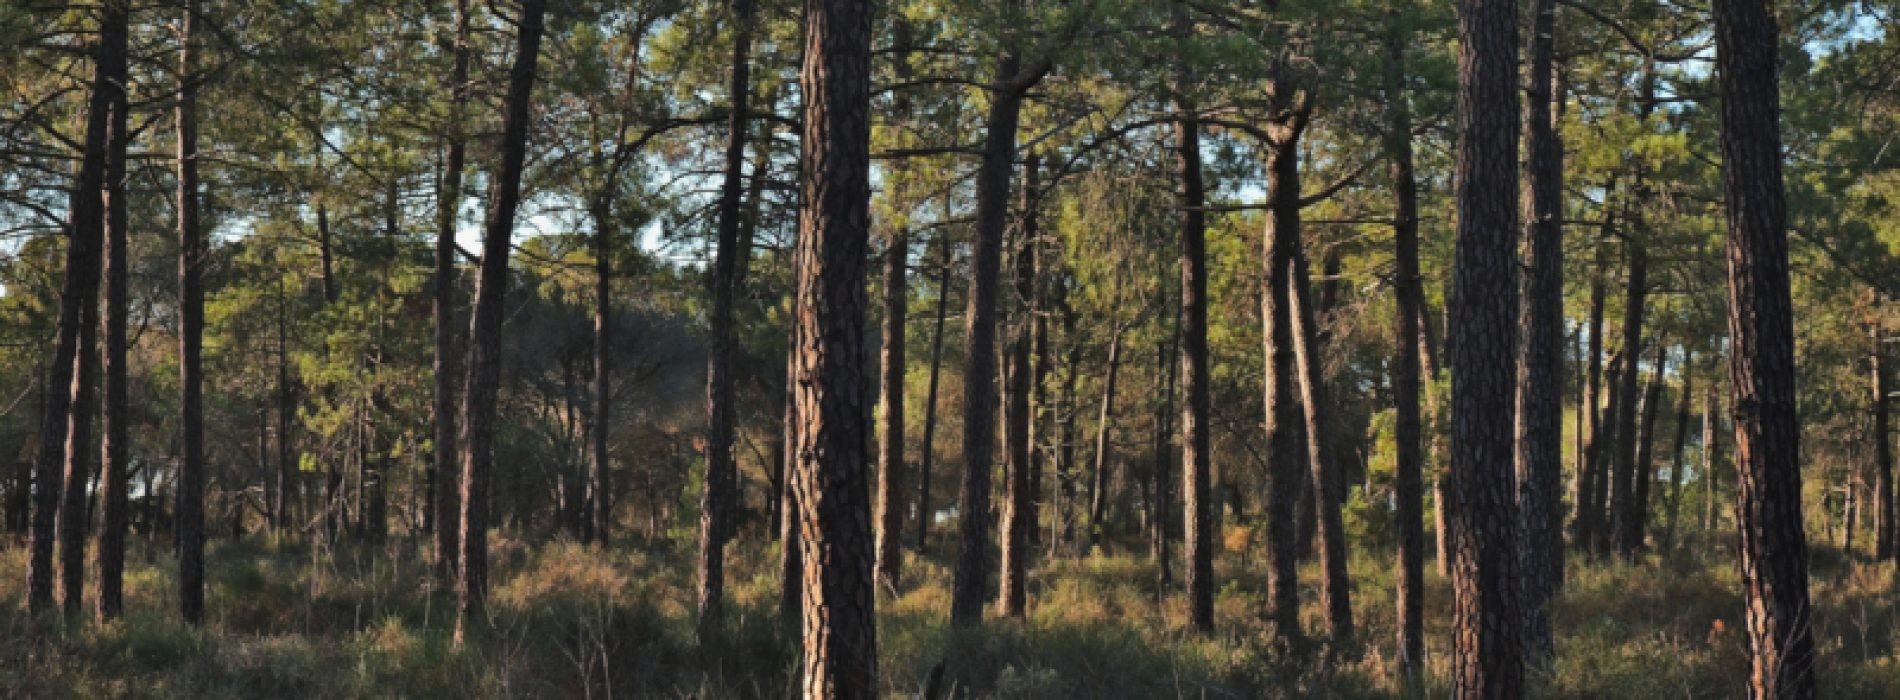 Governo vai investir 9 M€ em material de limpeza das florestas